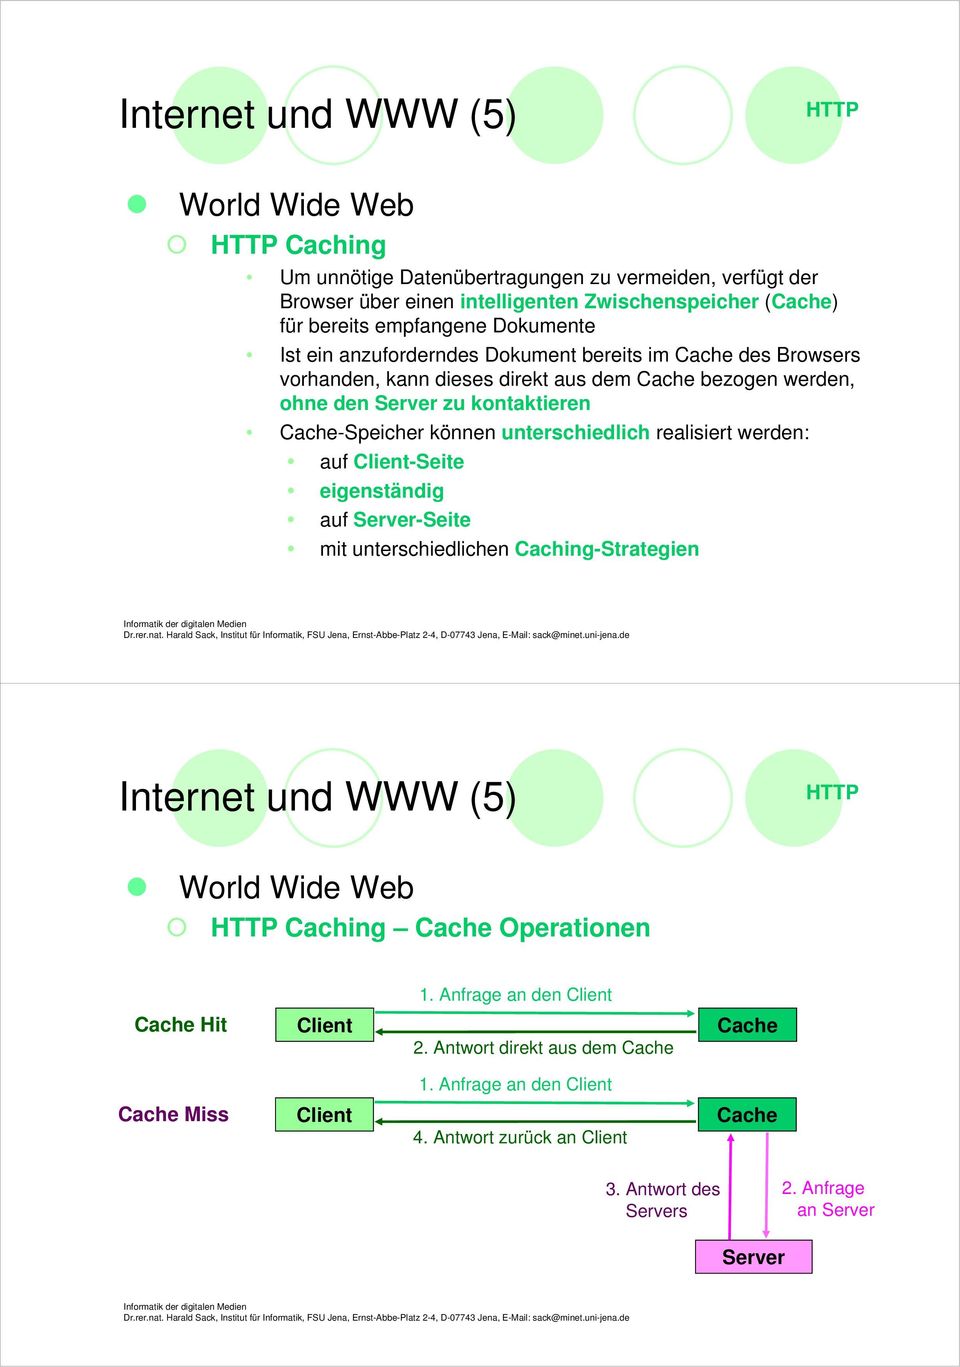 unterschiedlich realisiert werden: auf Client-Seite eigenständig auf Server-Seite mit unterschiedlichen Caching-Strategien HTTP HTTP Caching Cache Operationen 1.